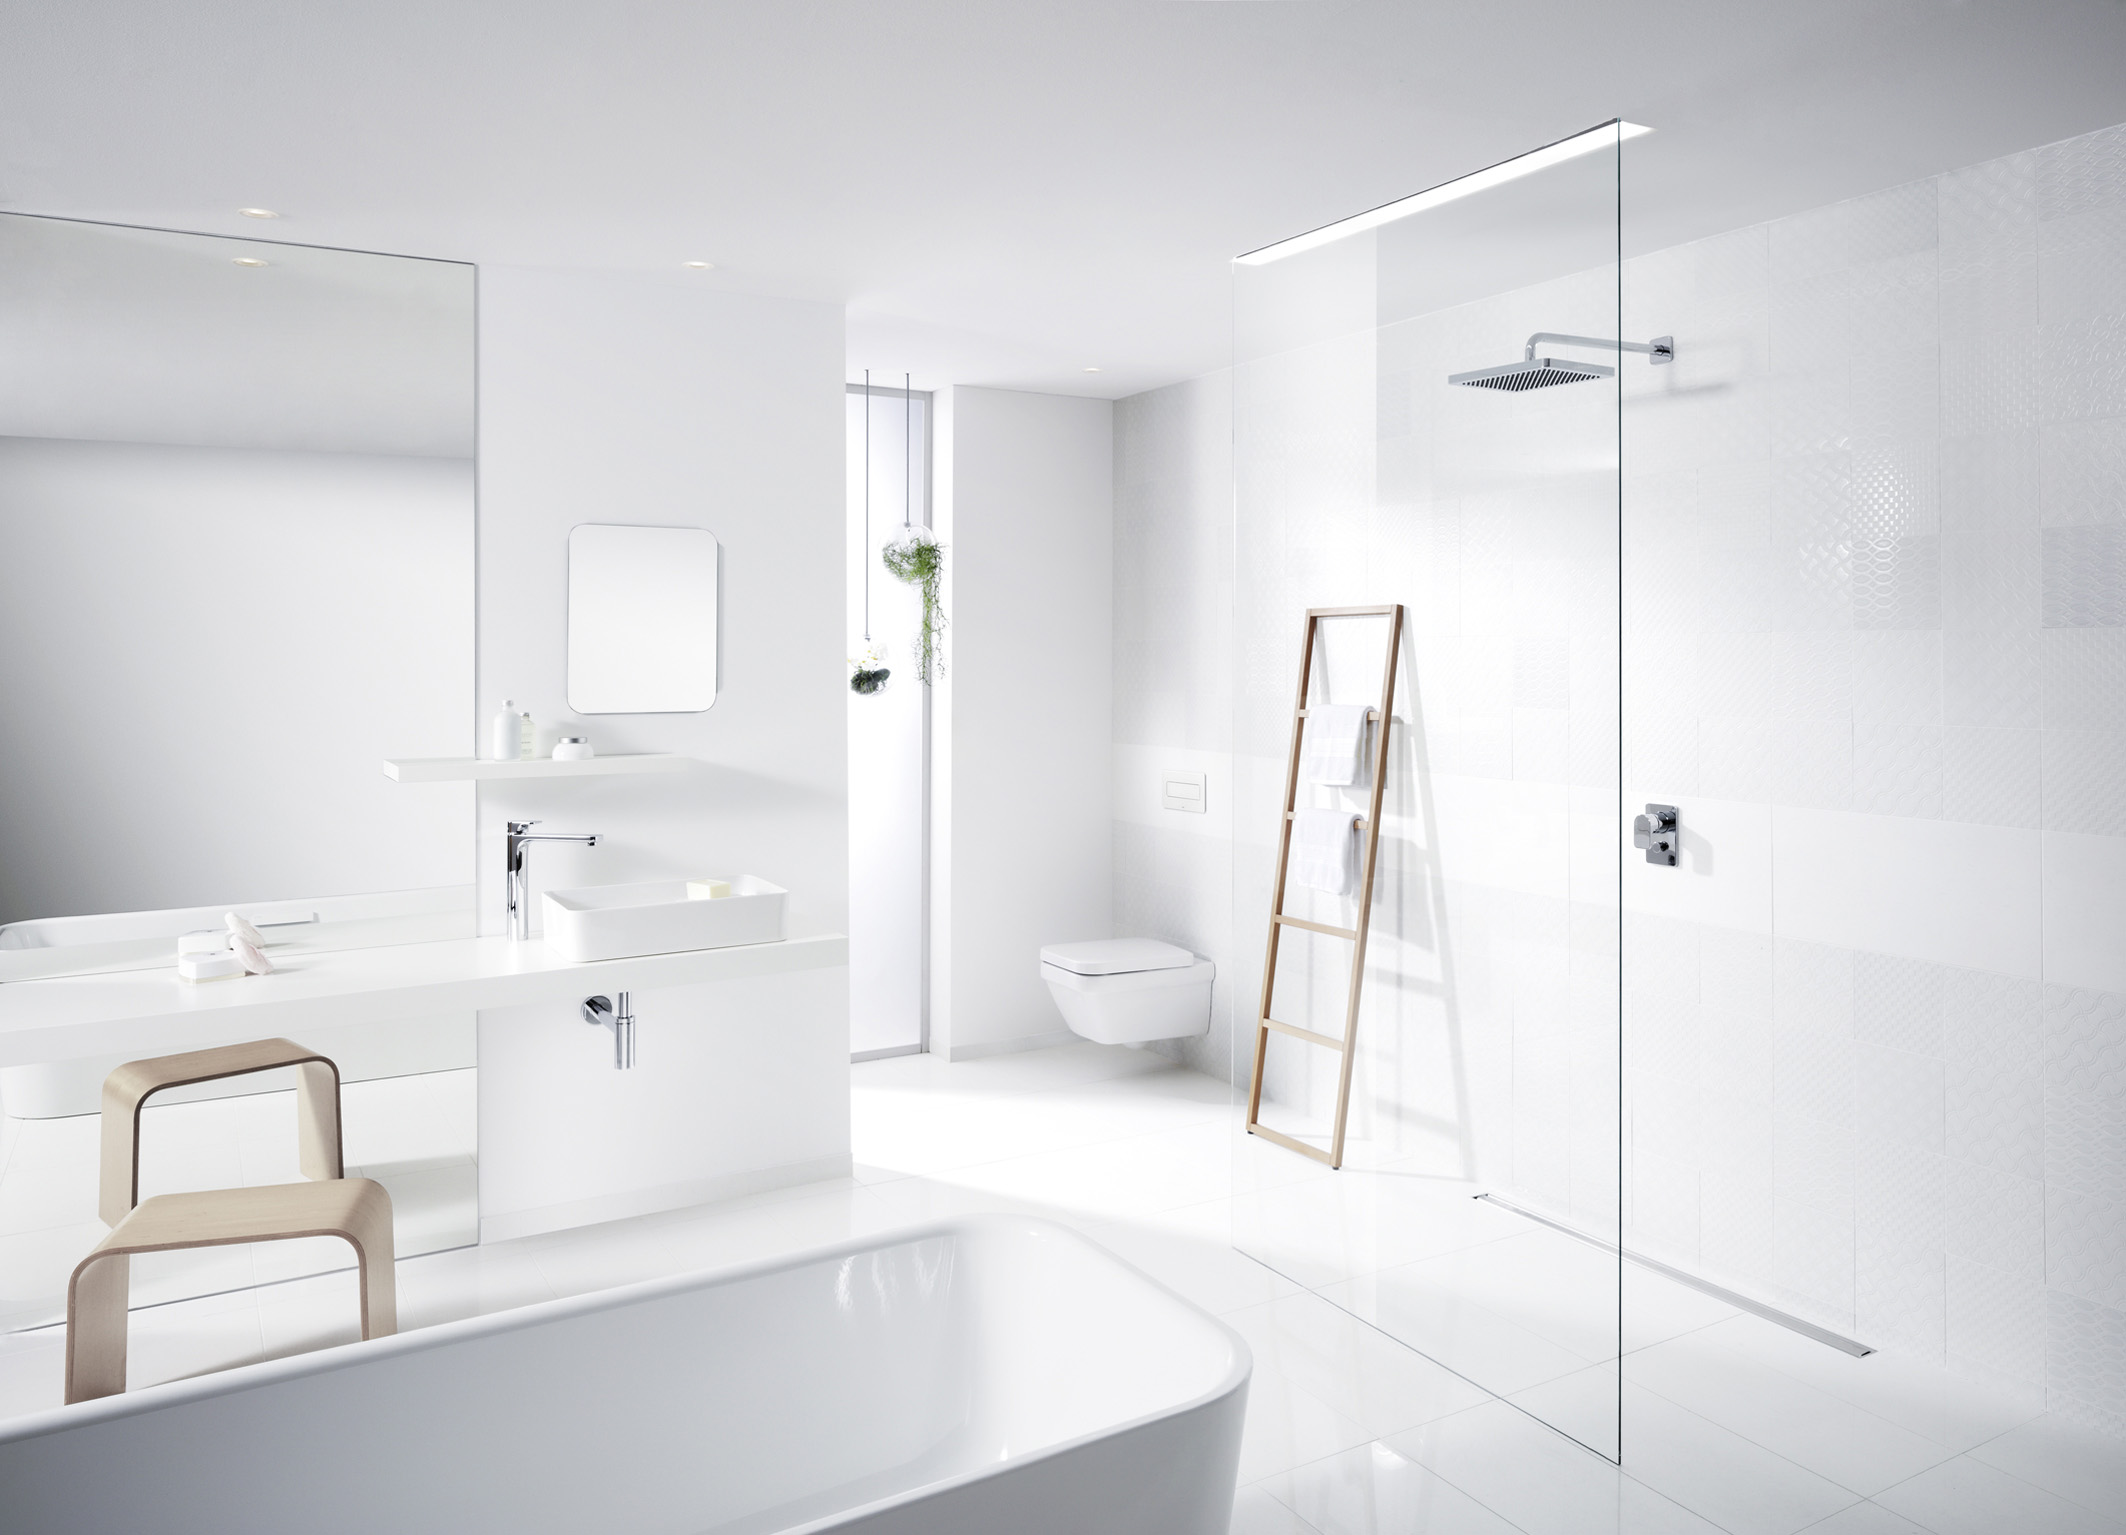 Witte badkamer volgens de laatste woontrends met producten van Viega #badkamer #badkamerinspiratie #inloopdouche #viega